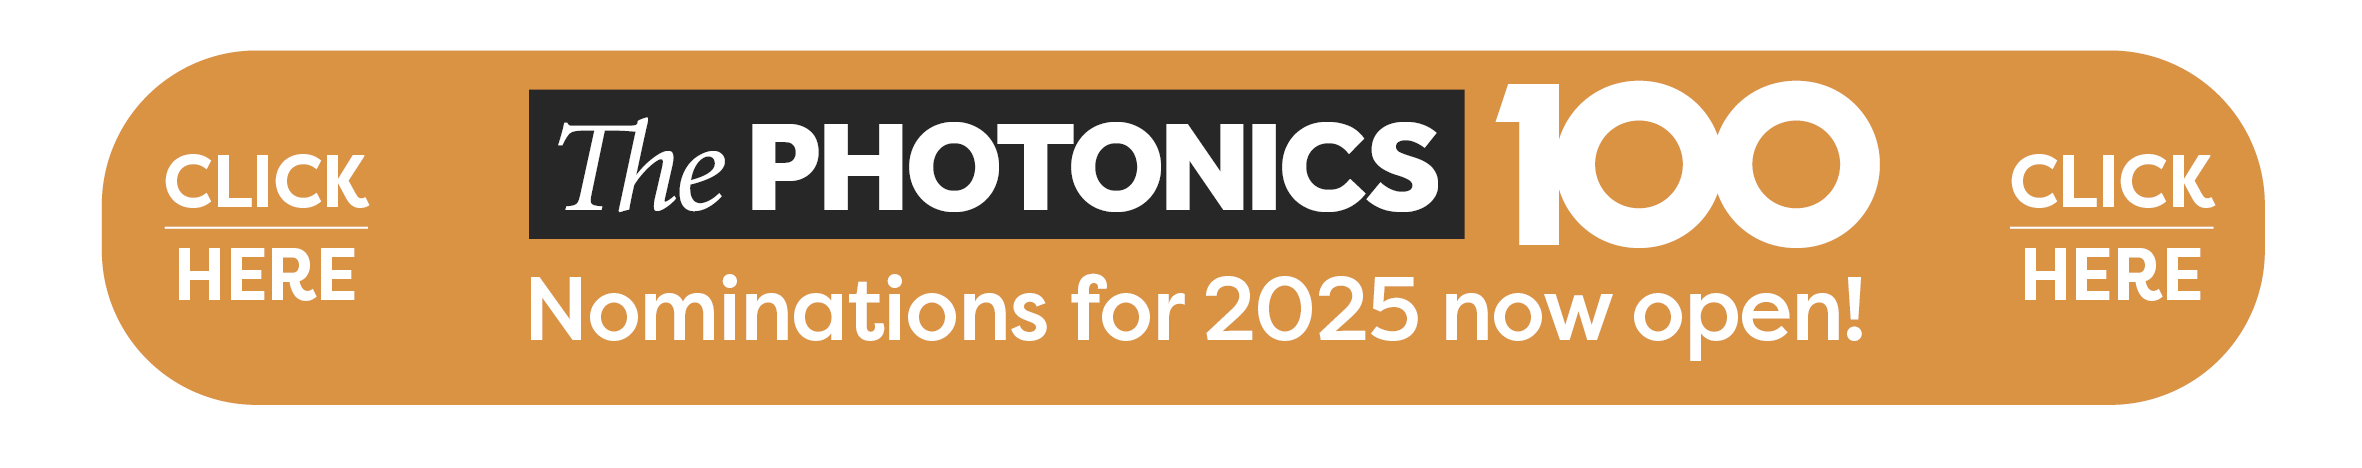 Photonics100 2025 voting open